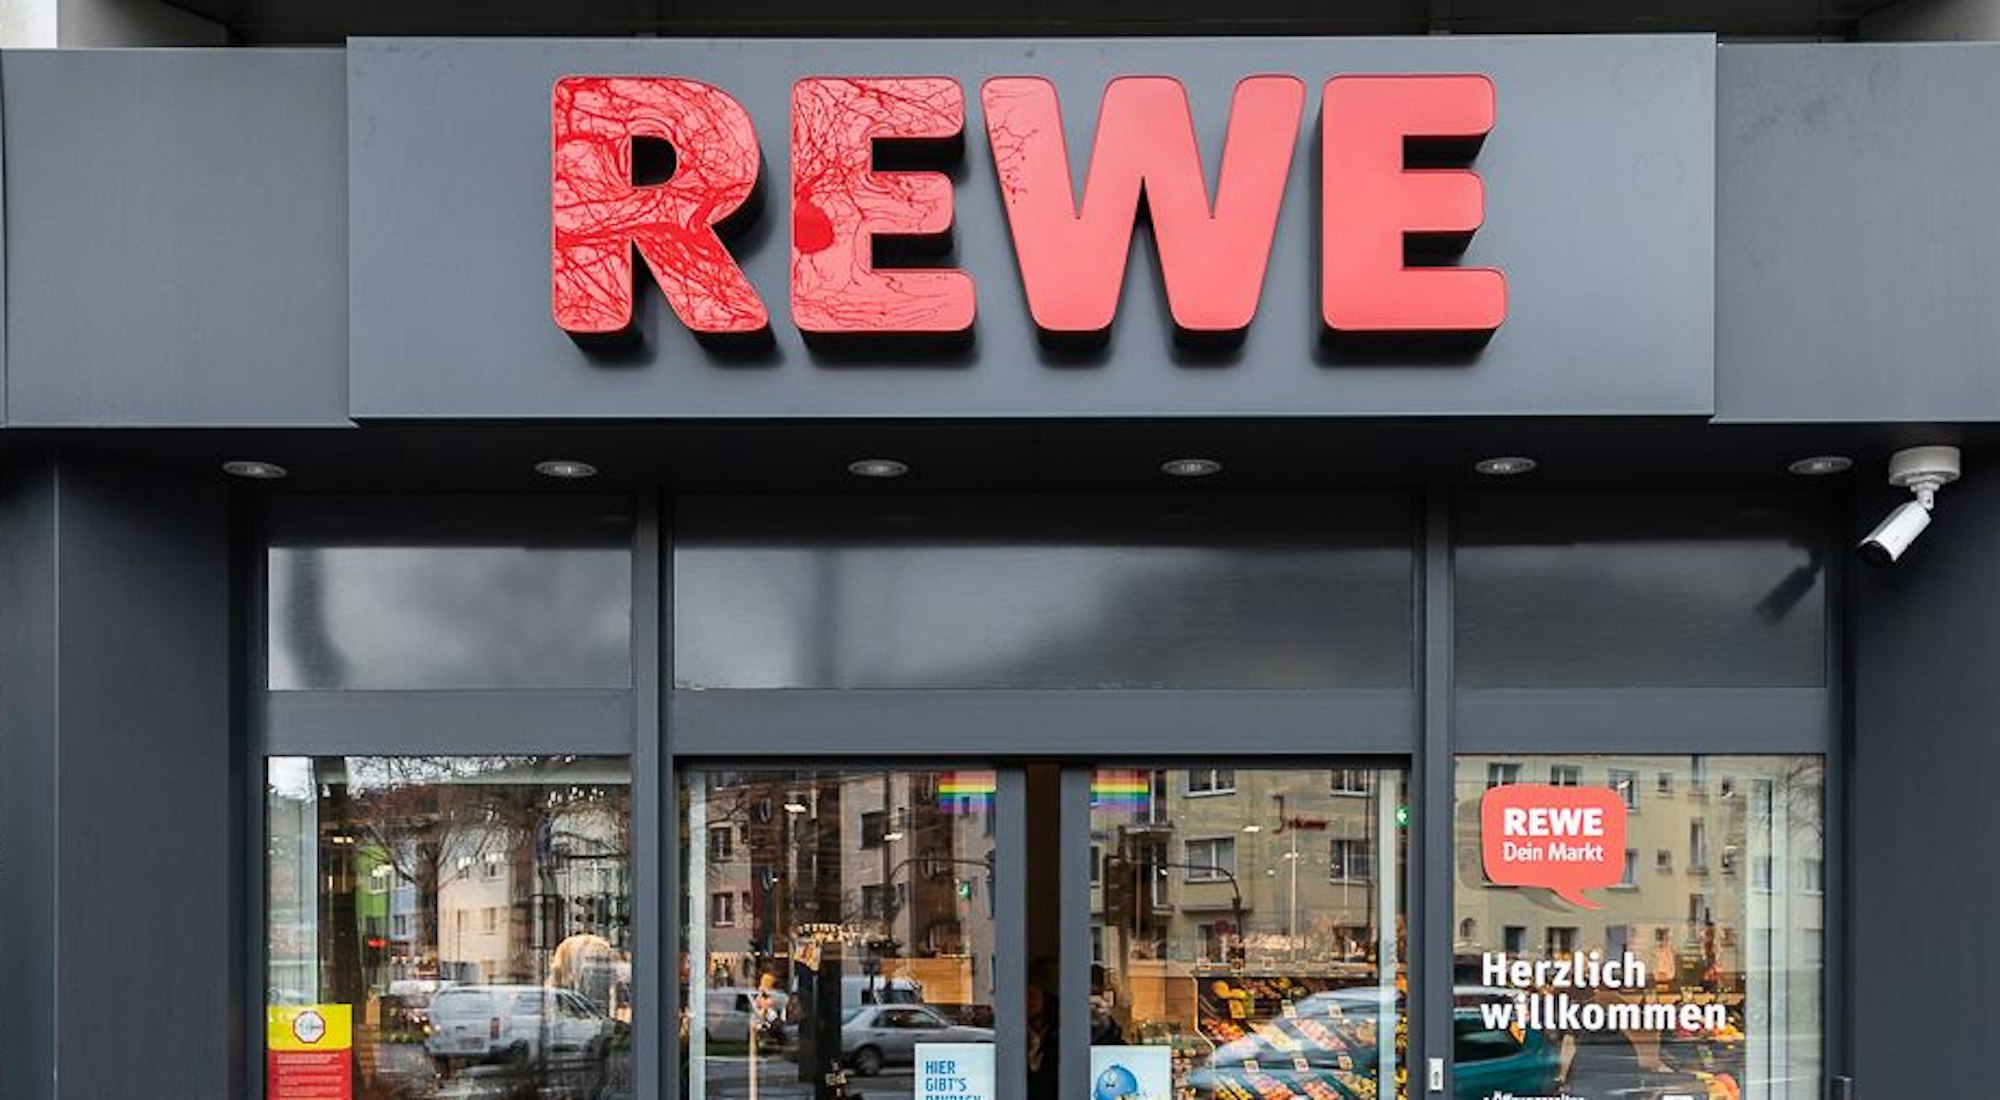 Der neue „Pick & Go“-Supermarkt des Kölner Lebensmittelkonzerns Rewe an der Luxemburger Straße 150 in Köln-Sülz. Deutschlandweit ist er der vierte hybride Supermarkt dieser Art, zudem der weitaus größte.